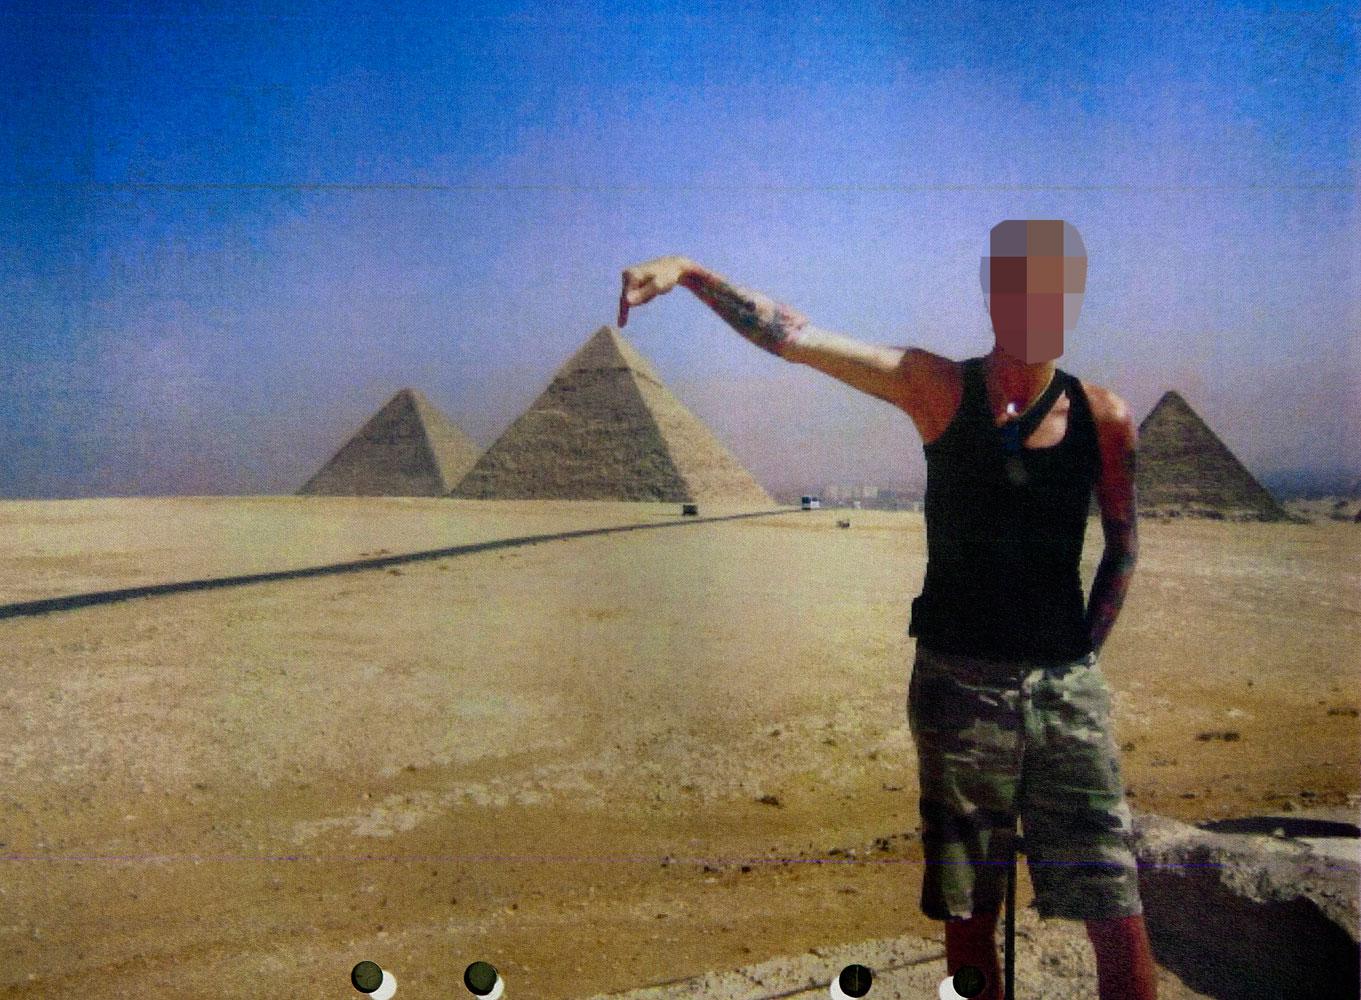 Den 48-årige mannen åkte på semester bland annat till Egypten och tittade på pyramiderna samtidigt som han fick miljoner av Försäkrings­kassan.